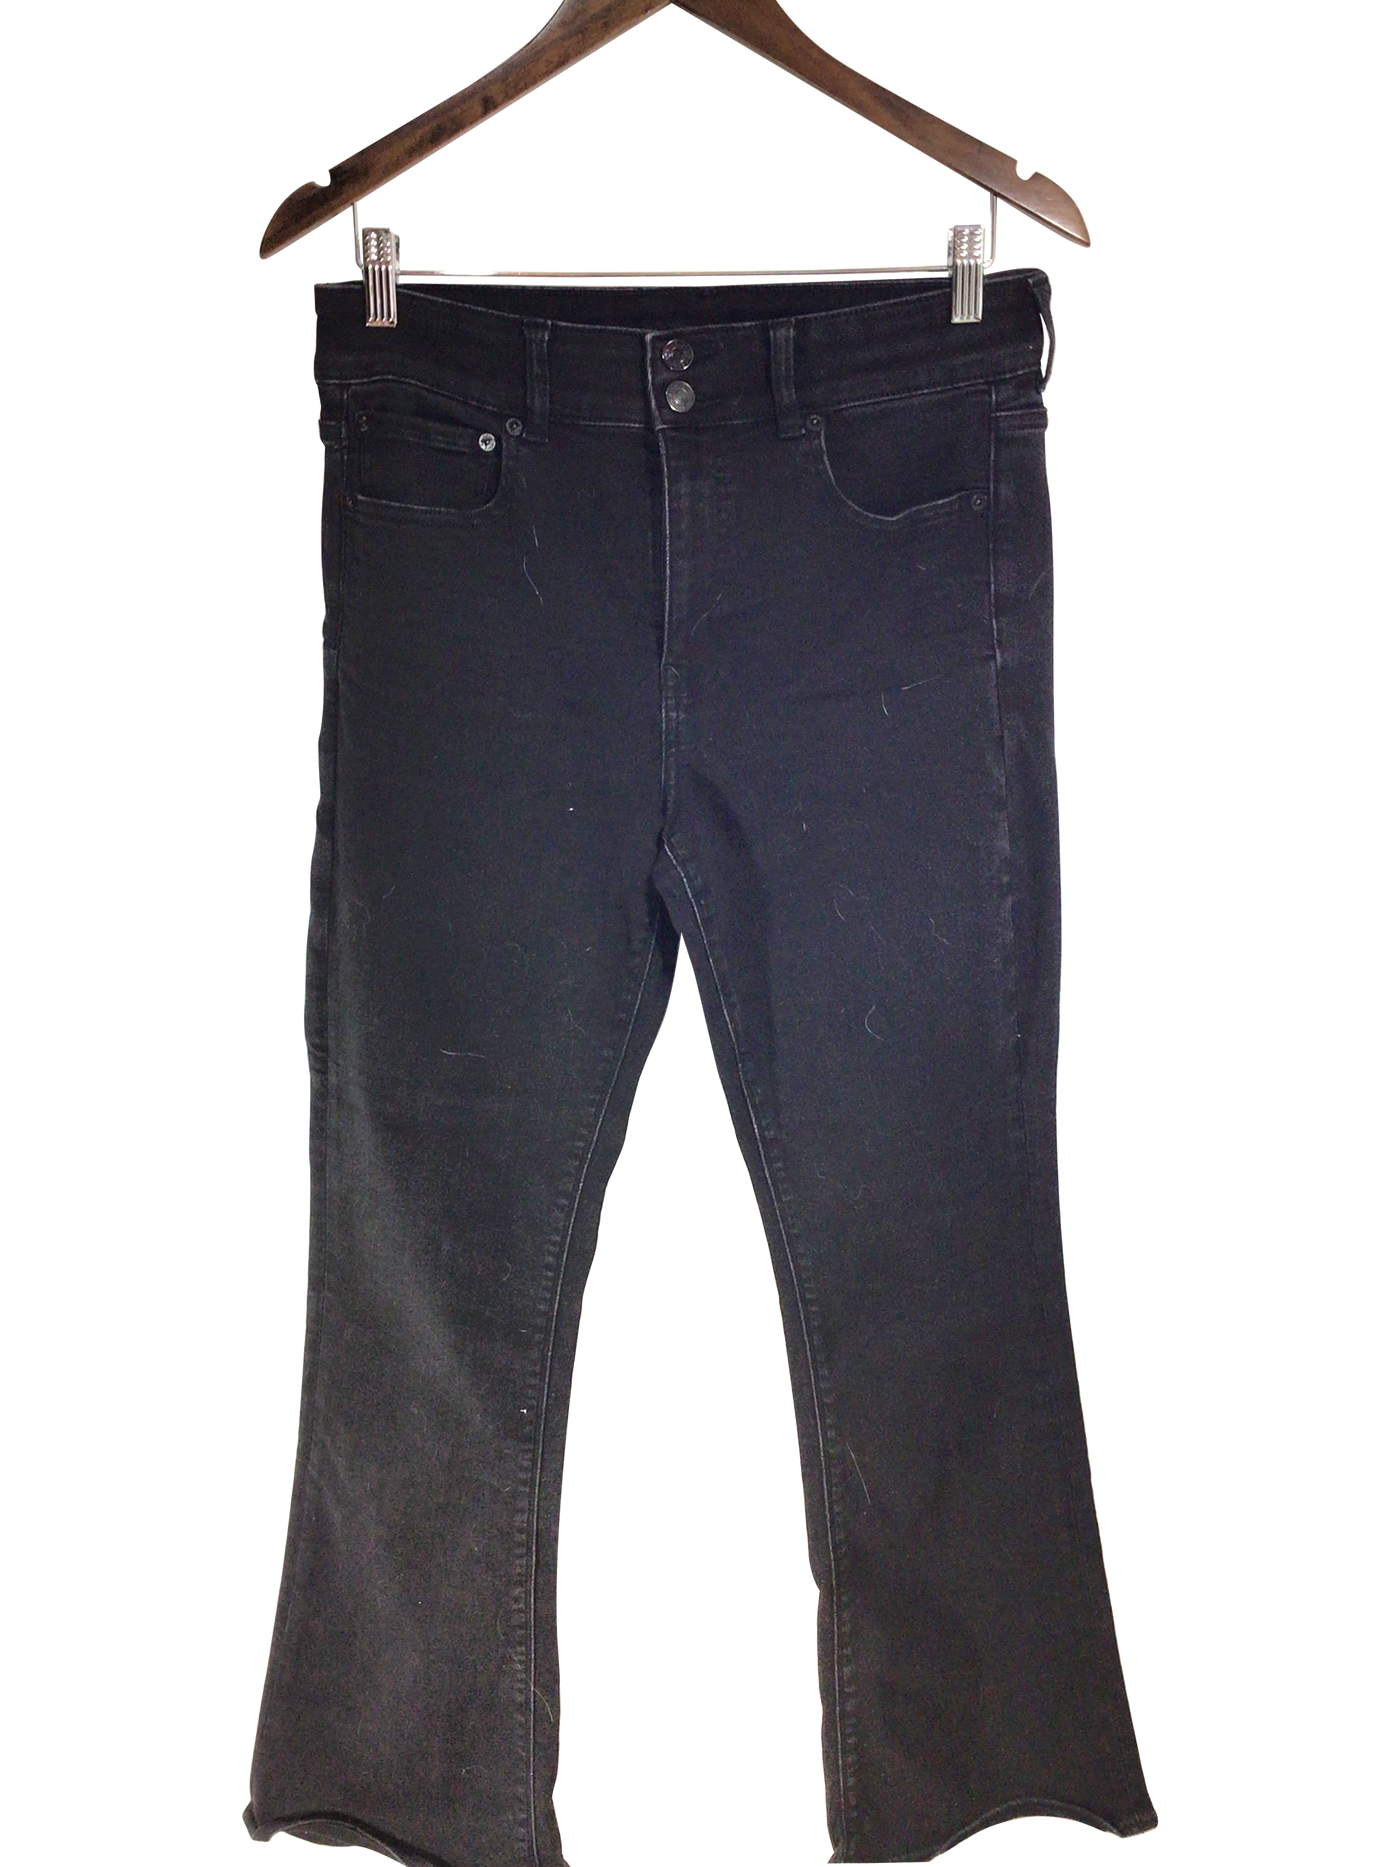 AMERICAN EAGLE Women Straight-Legged Jeans Regular fit in Black - Size 10 | 14.9 $ KOOP